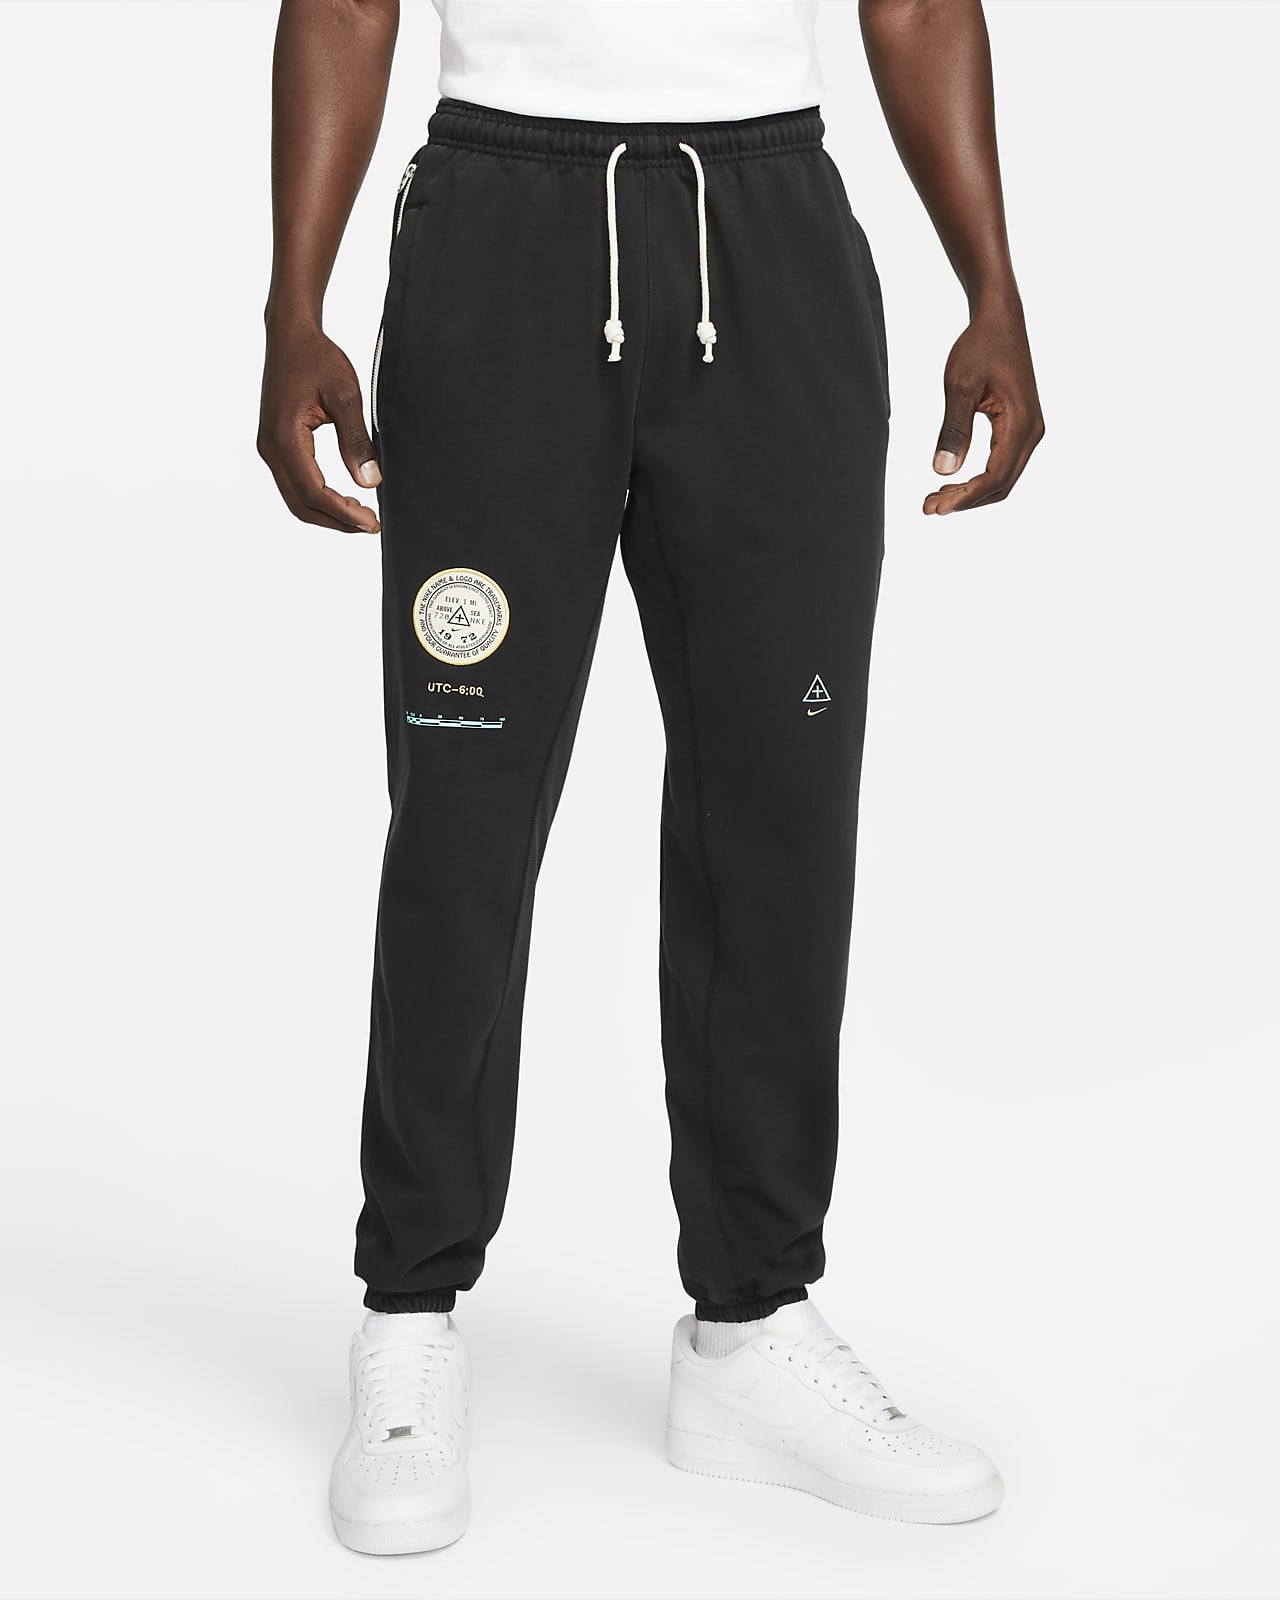 Pantalones de básquetbol para hombre Nike Dri-FIT Standard Issue